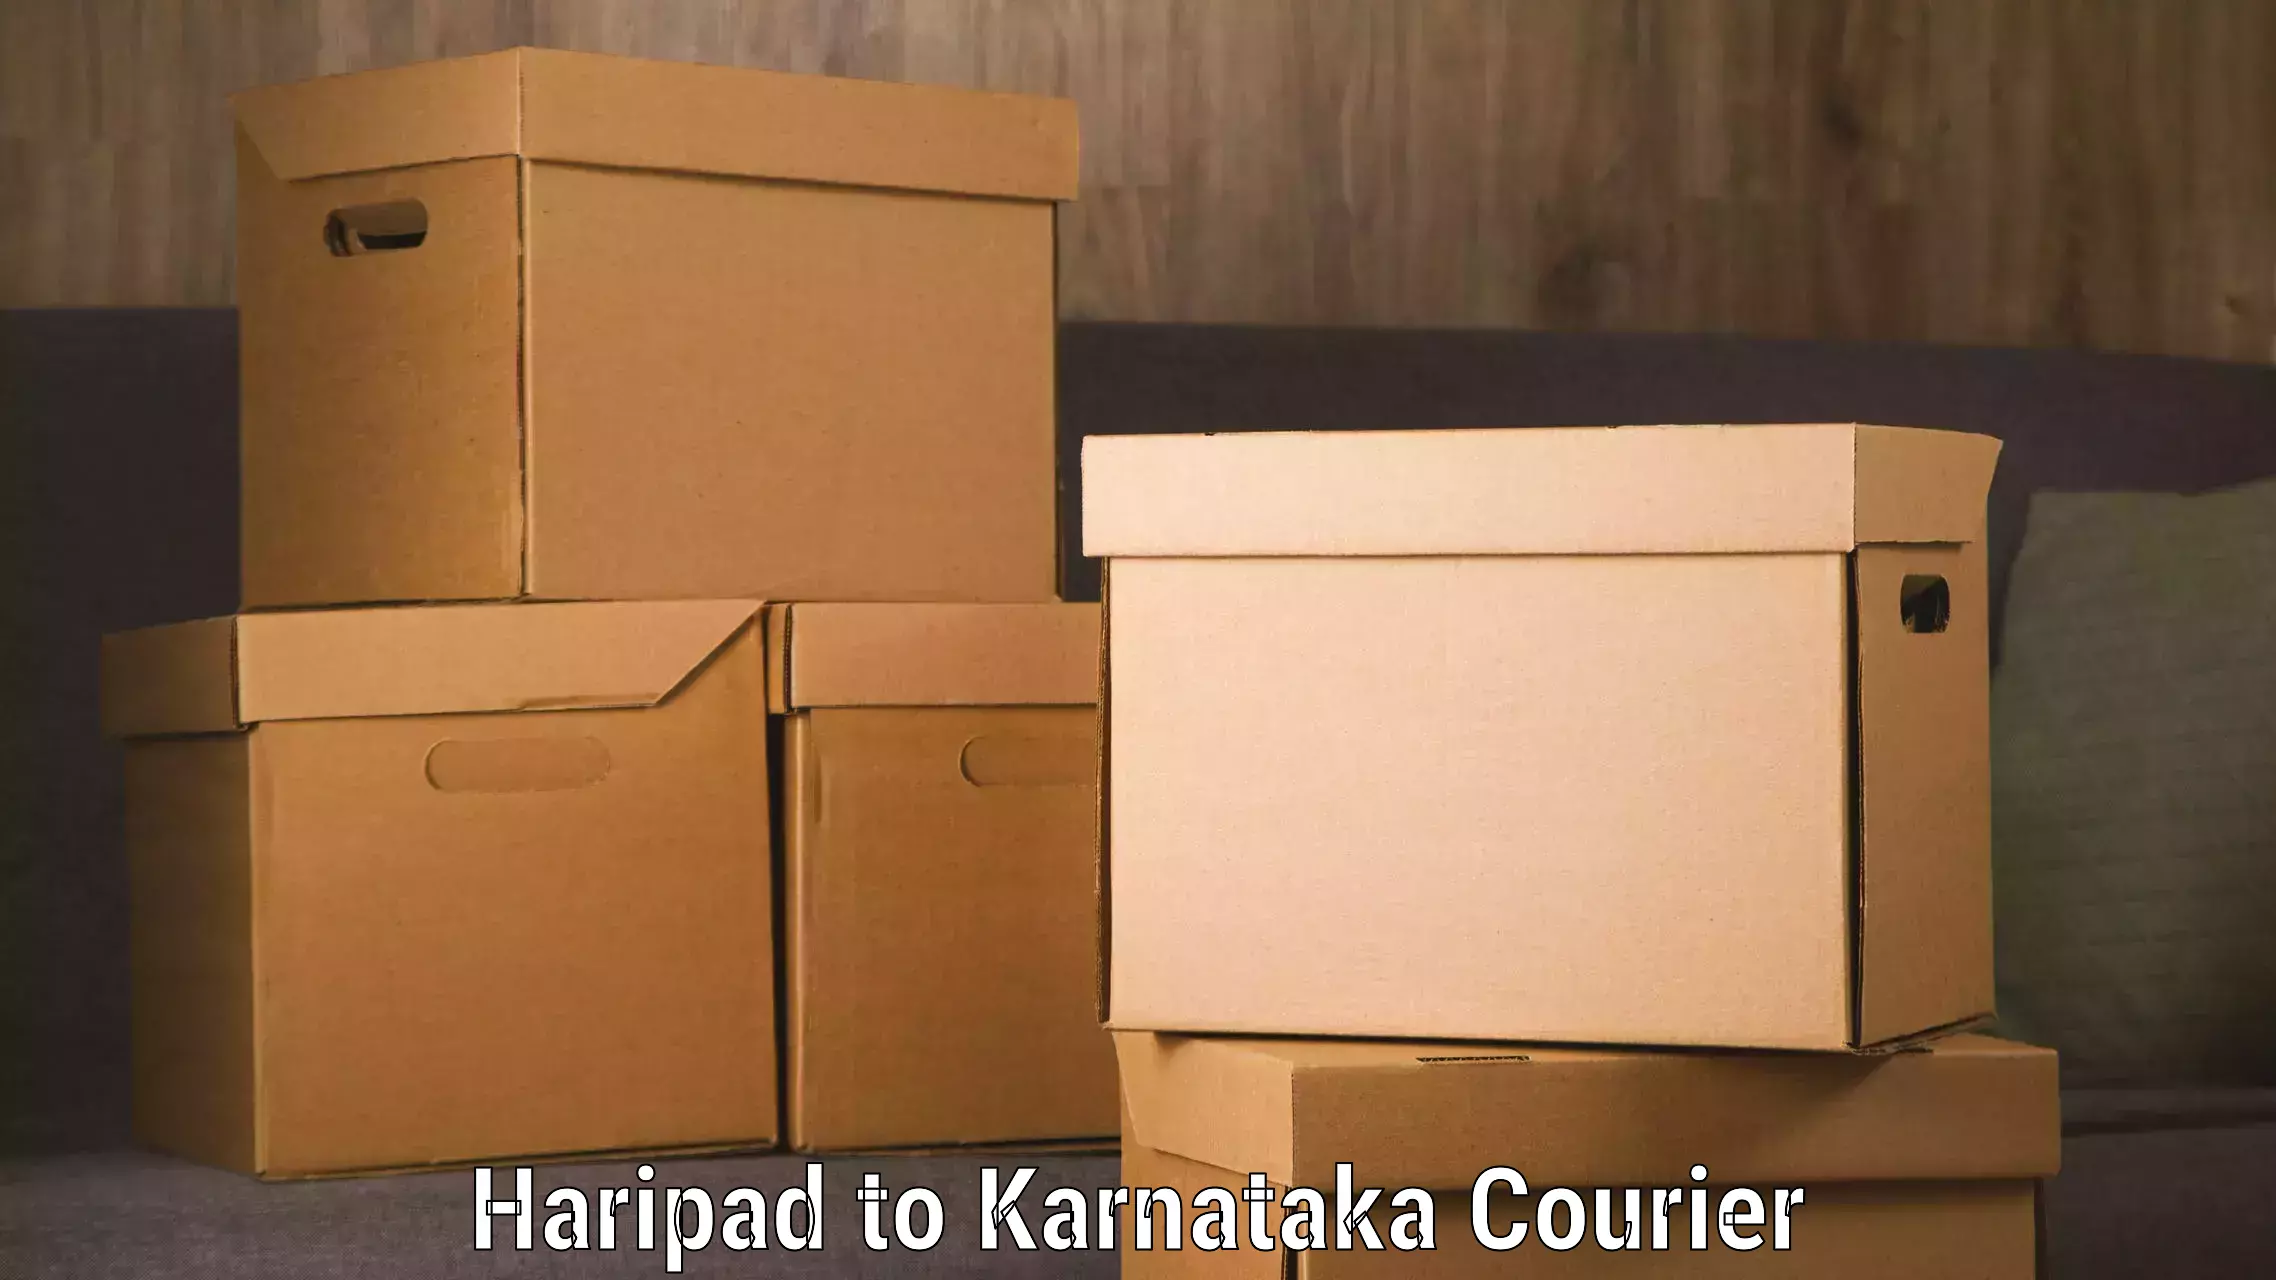 Supply chain delivery in Haripad to Karnataka